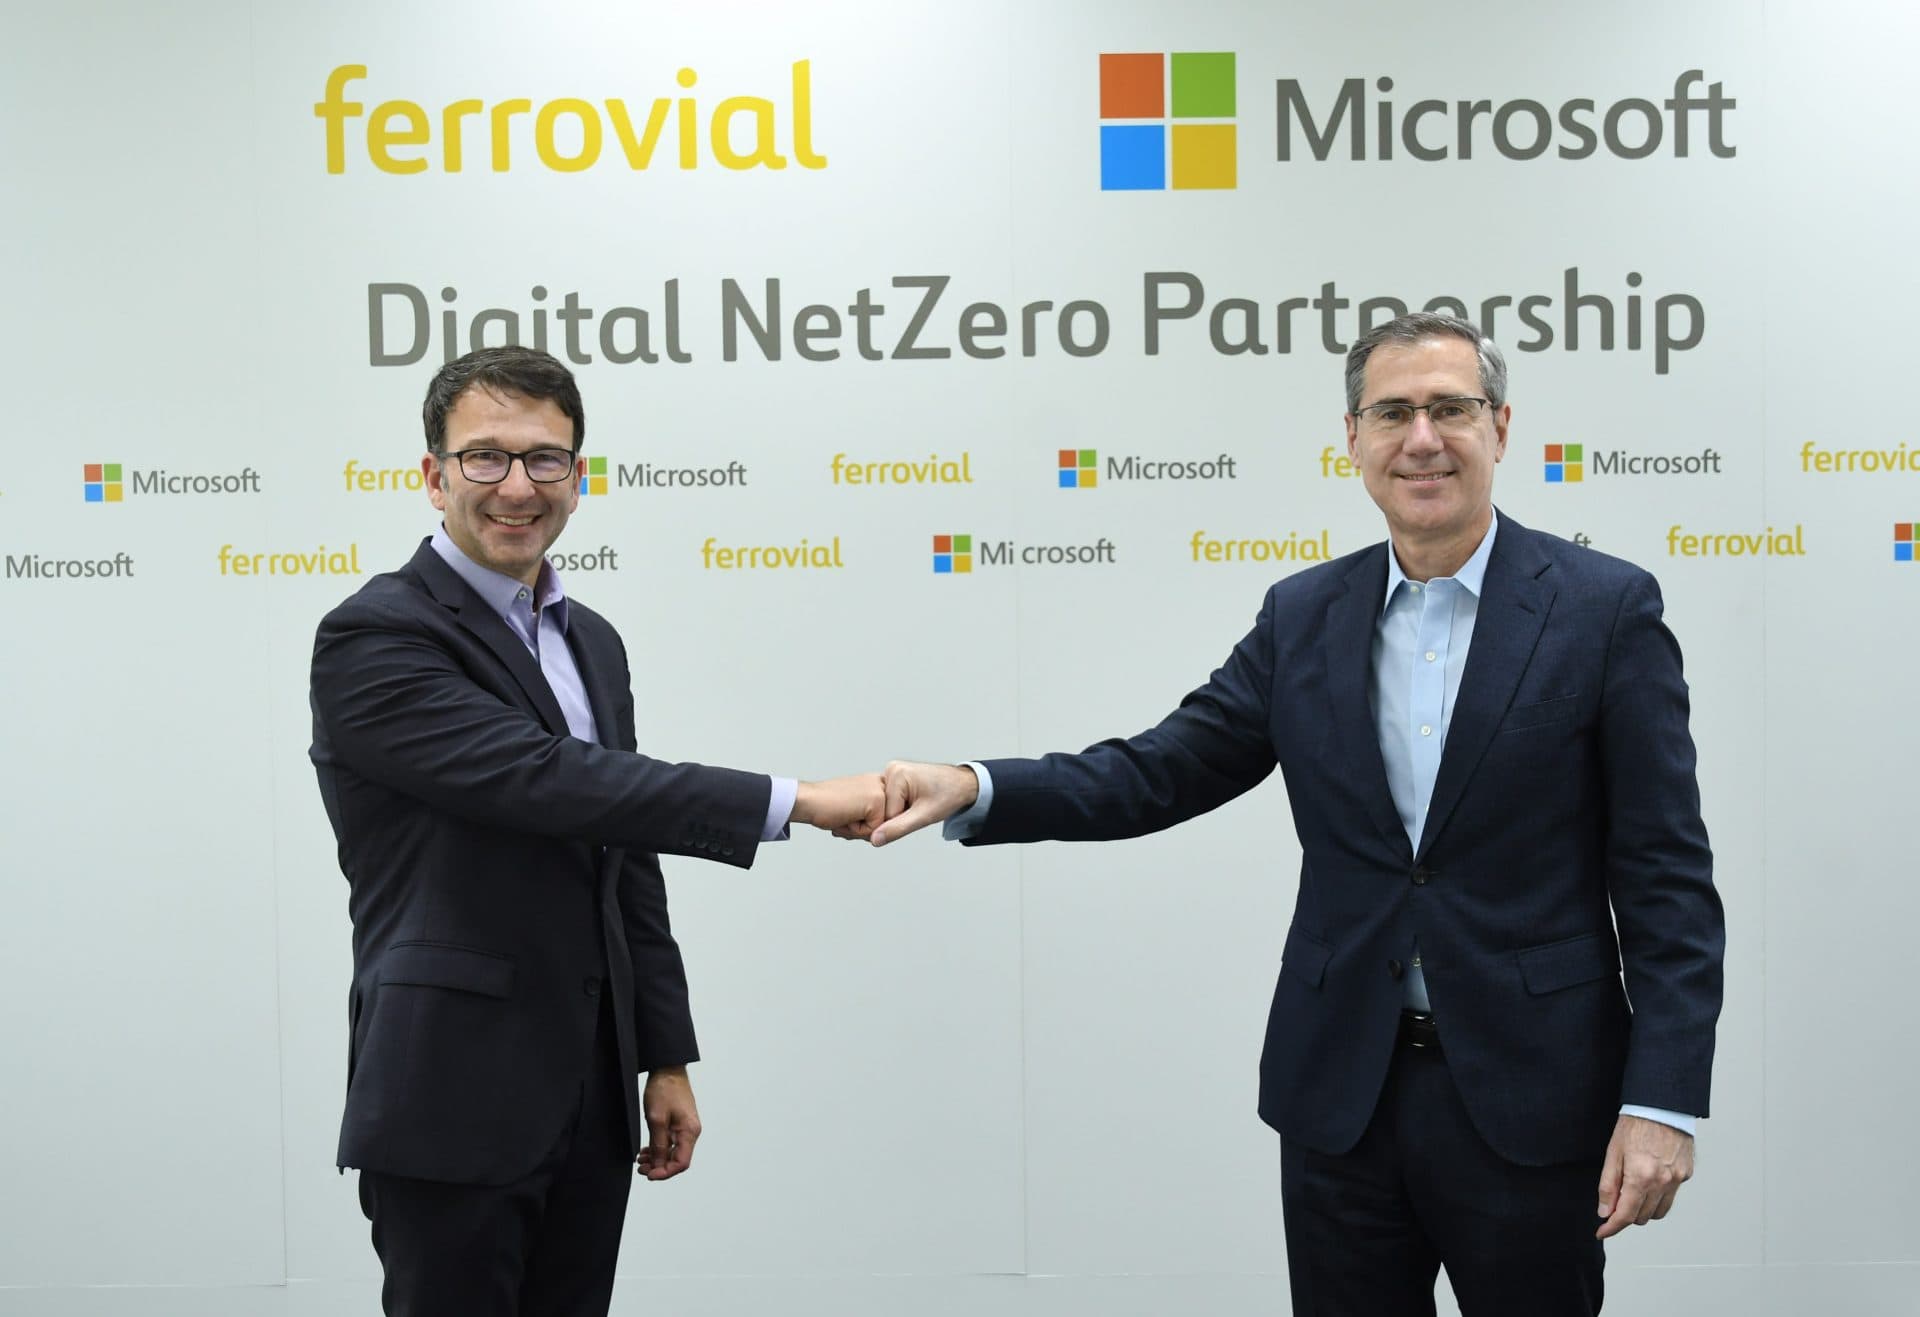 Ignacio Madridejos, CEO de Ferrovial, y Judson Althoff, vicepresidente ejecutivo y Chief Commercial Officer de Microsoft Corporation